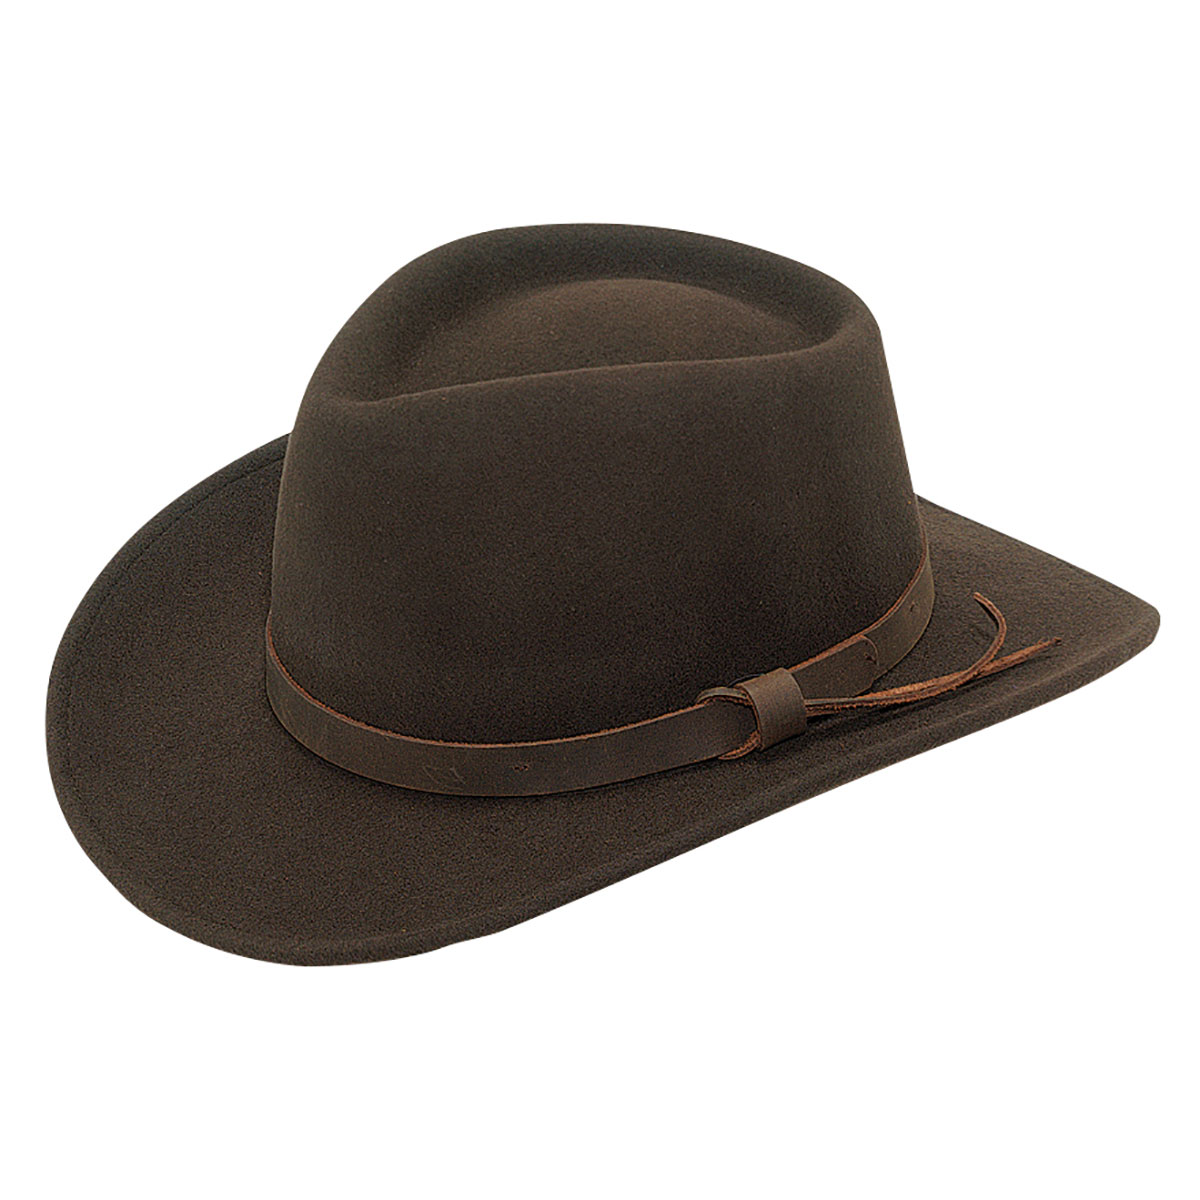 7211202-l Crushable Cowboy Hat - Brown - Large